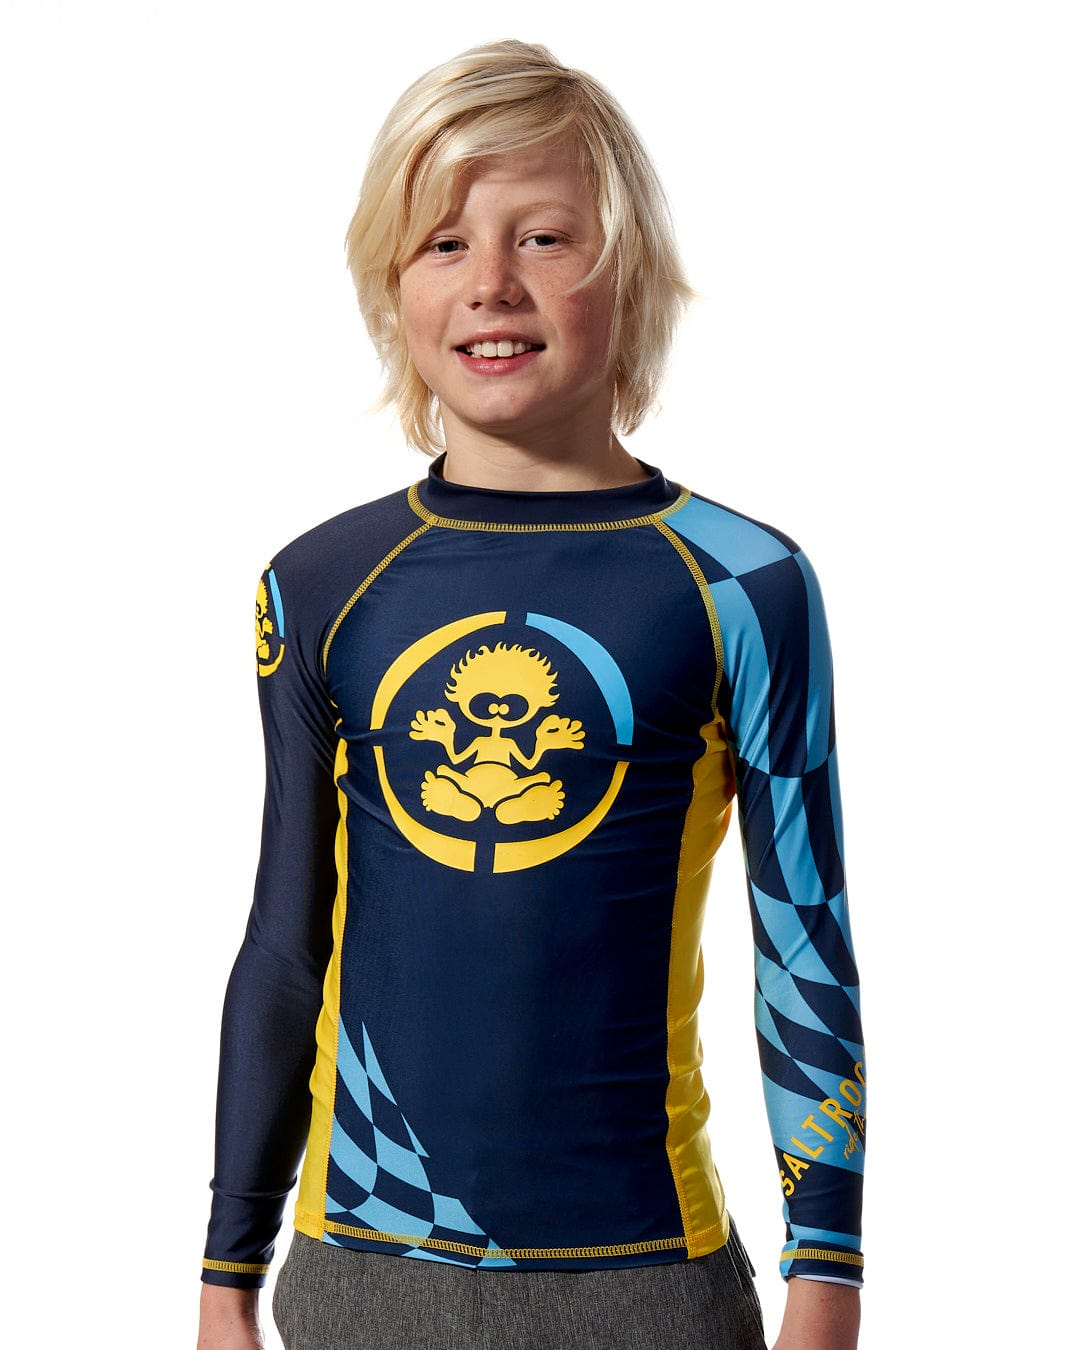 A young boy wearing a Saltrock Warp - Kids Long Sleeve Rash Vest - Blue.